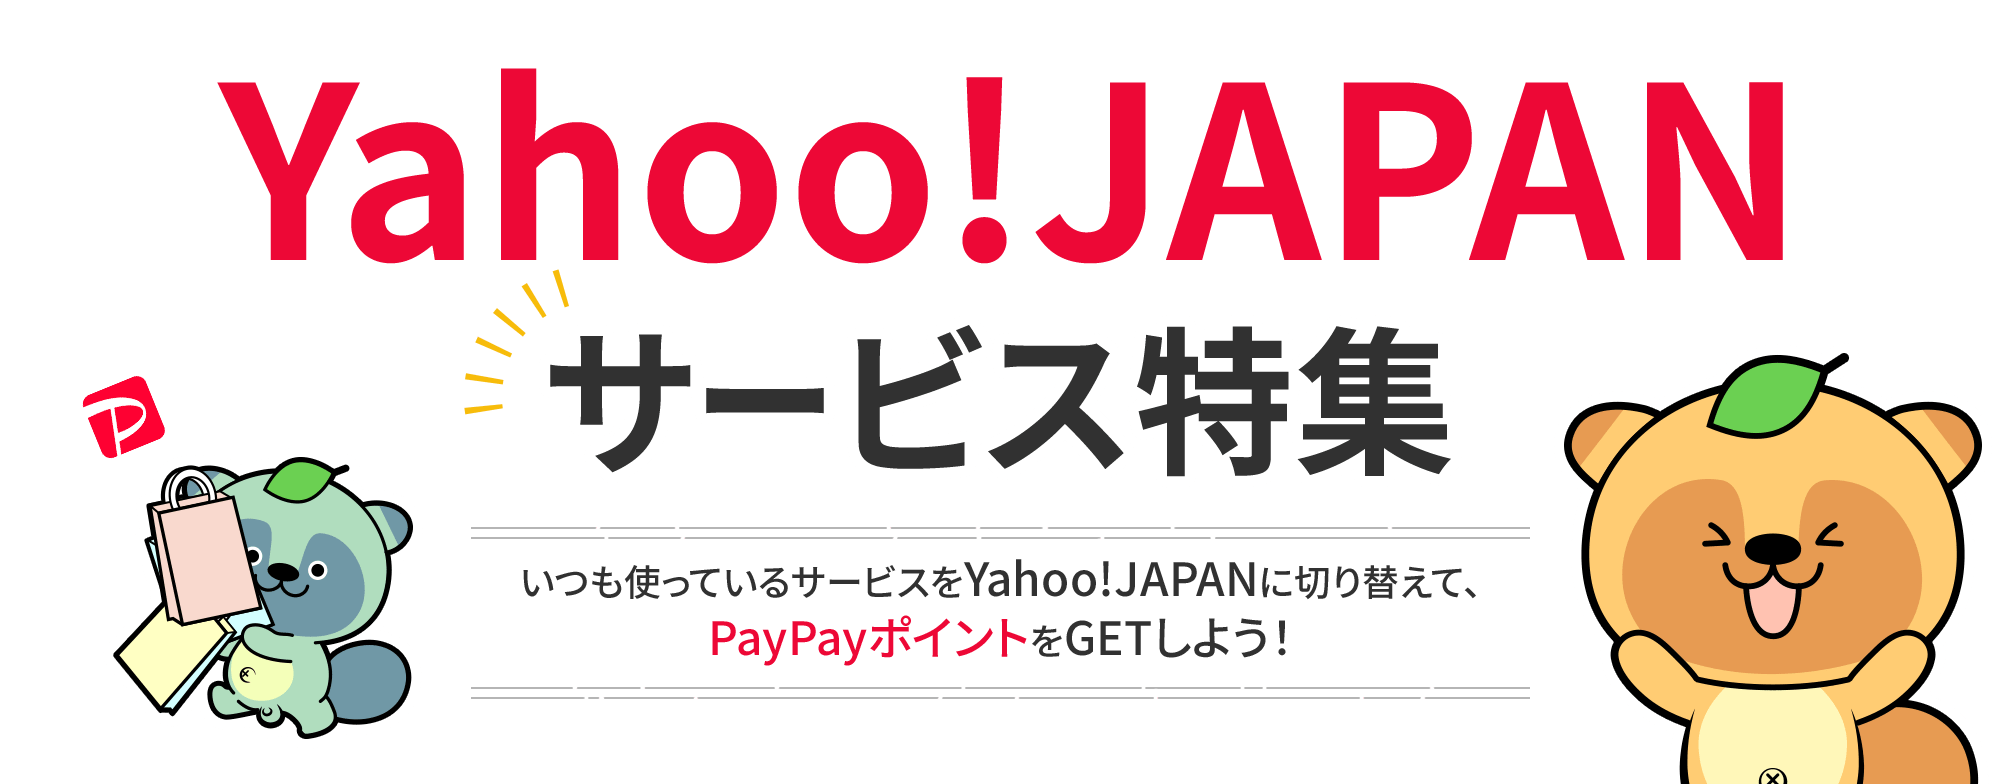 Yahoo!JAPANサービス特集